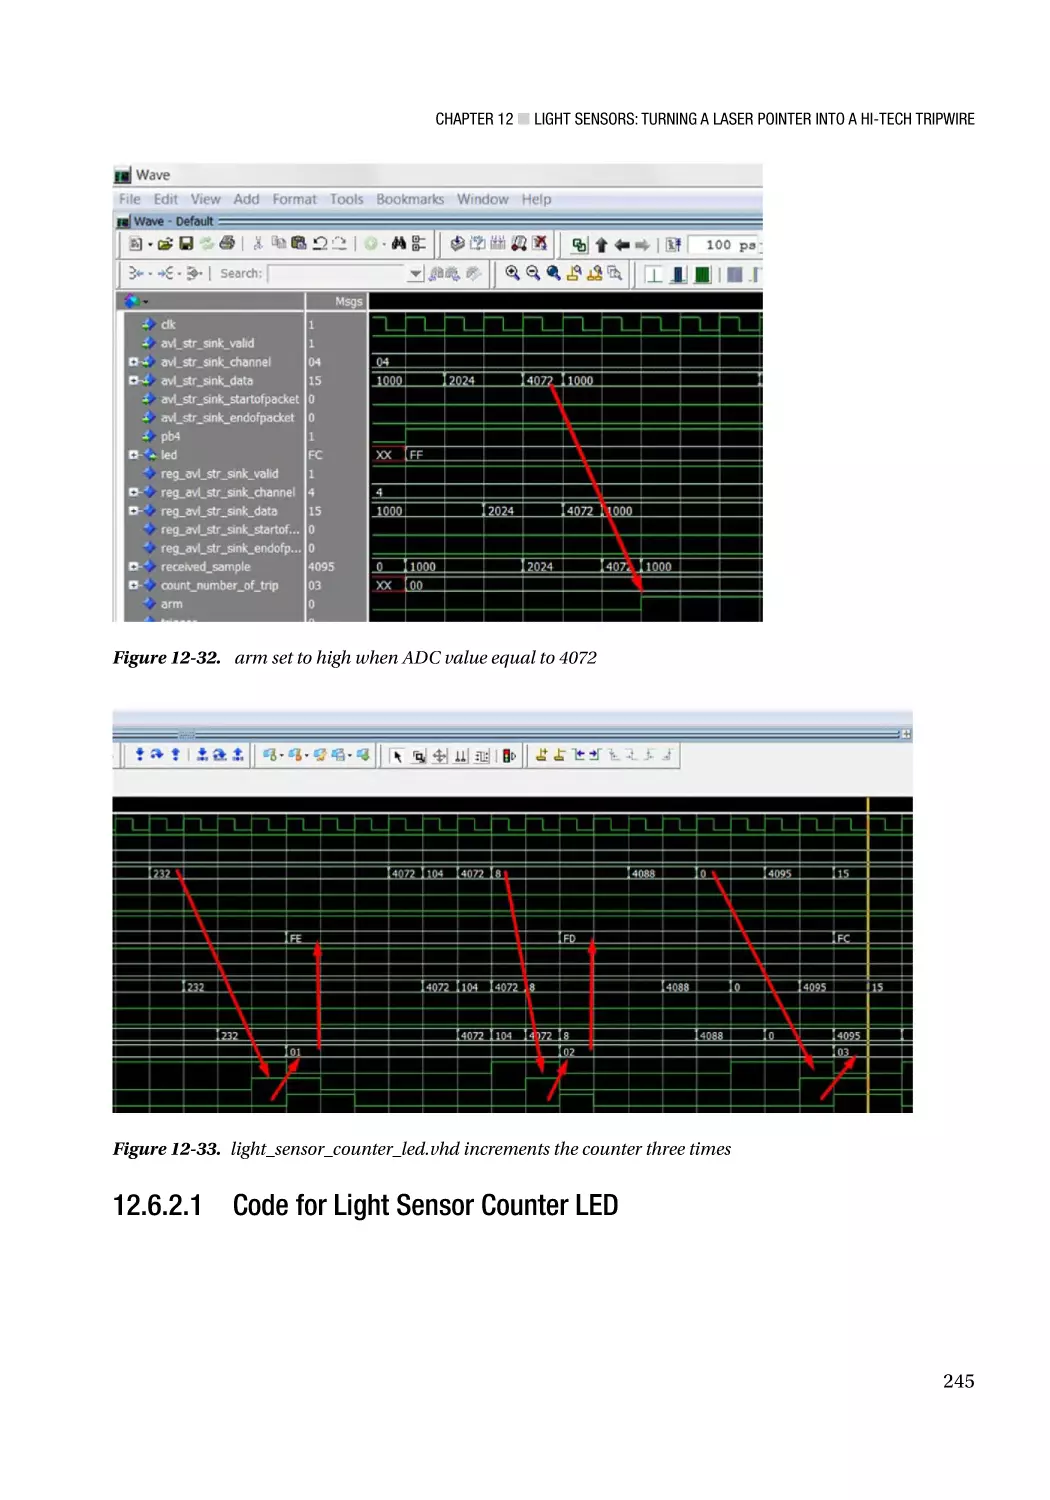 12.6.2.1 Code for Light Sensor Counter LED